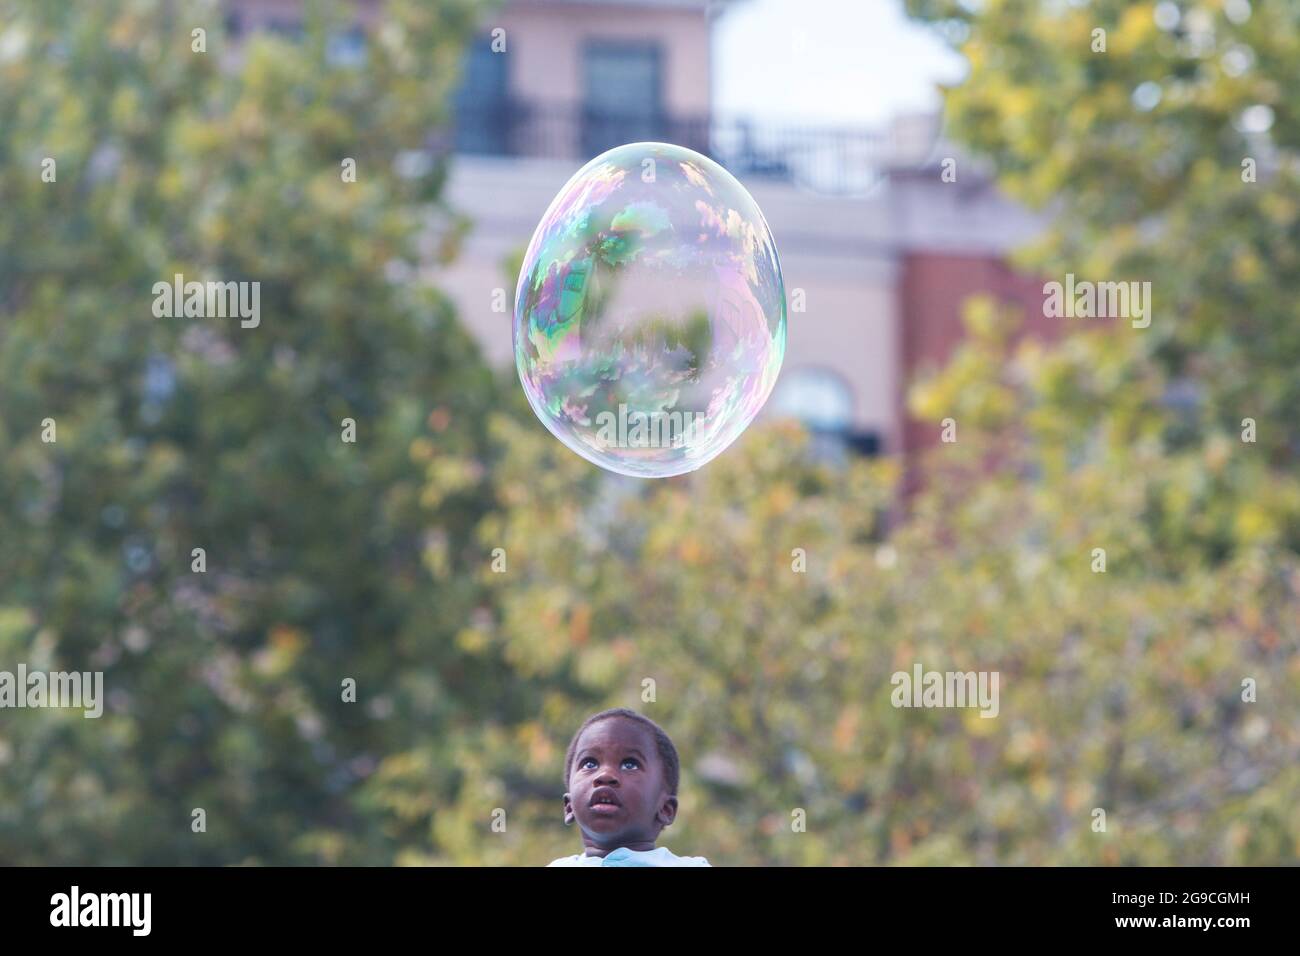 Suwanee, GA, USA - 21 settembre 2019: Un ragazzino guarda con stupore mentre una bolla a forma di uovo galleggia sopra la testa, in un festival autunnale. Foto Stock